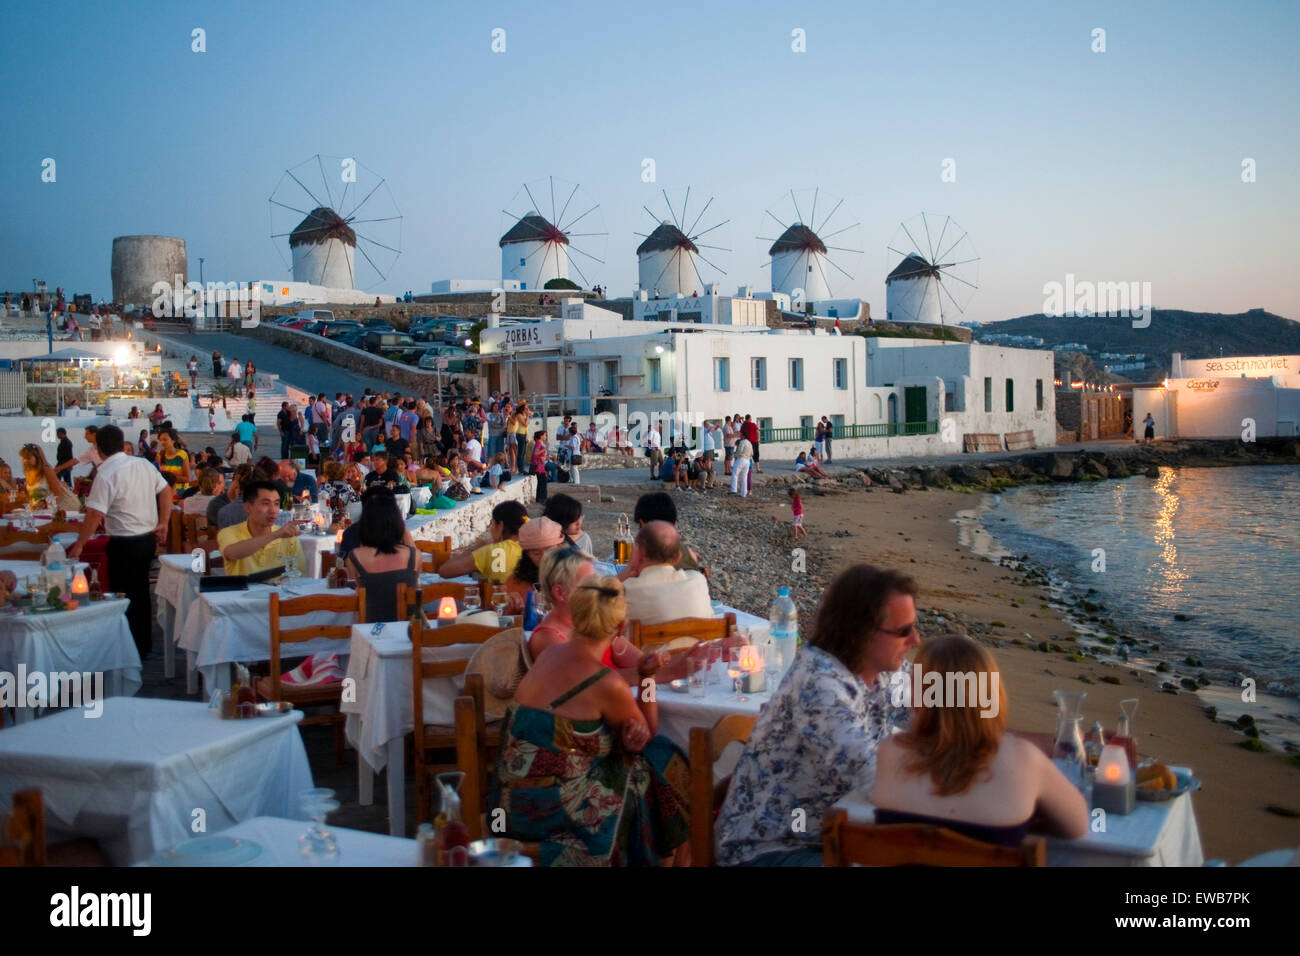 Griechenland, Kykladen, Mykonos, Mykonos Stadt ( Chora ), Alefkantra oder Venetia-Viertel, auch 'Little Venice' genannt. Hier fi Stock Photo